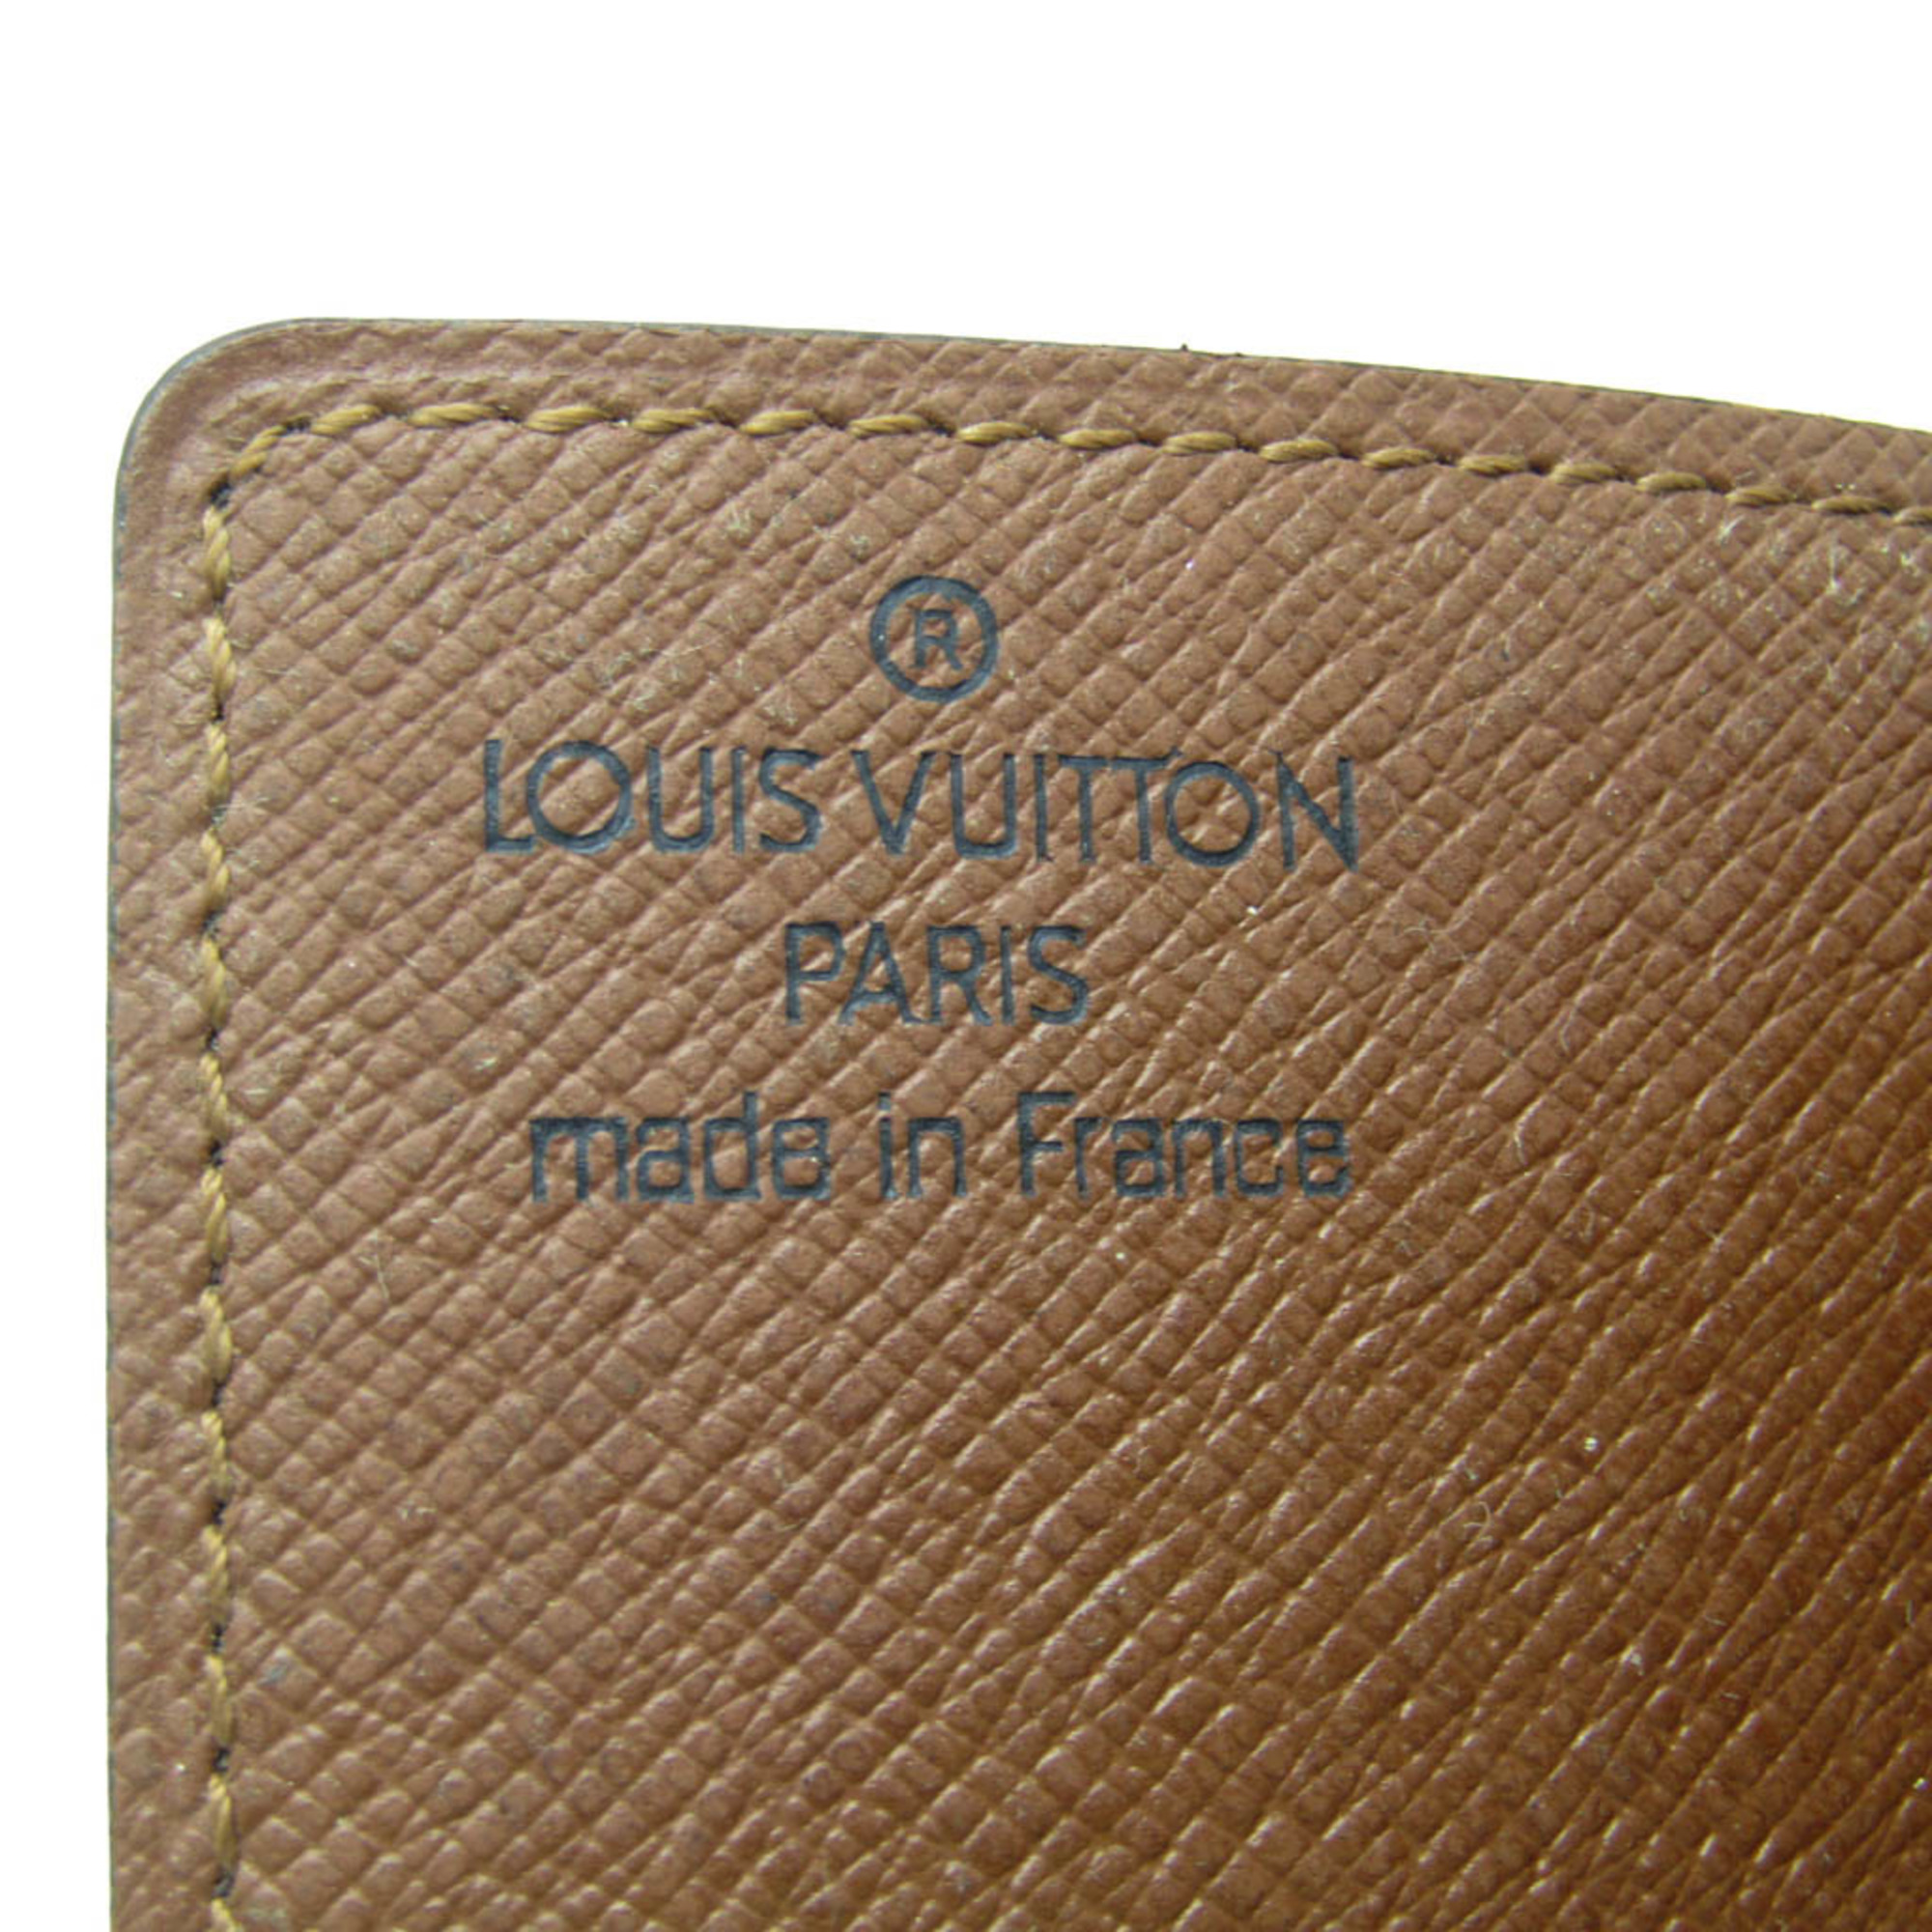 ルイ・ヴィトン(Louis Vuitton) モノグラム ポルトカルト クレディ プレッシオン M60937 モノグラム カードケース モノグラム